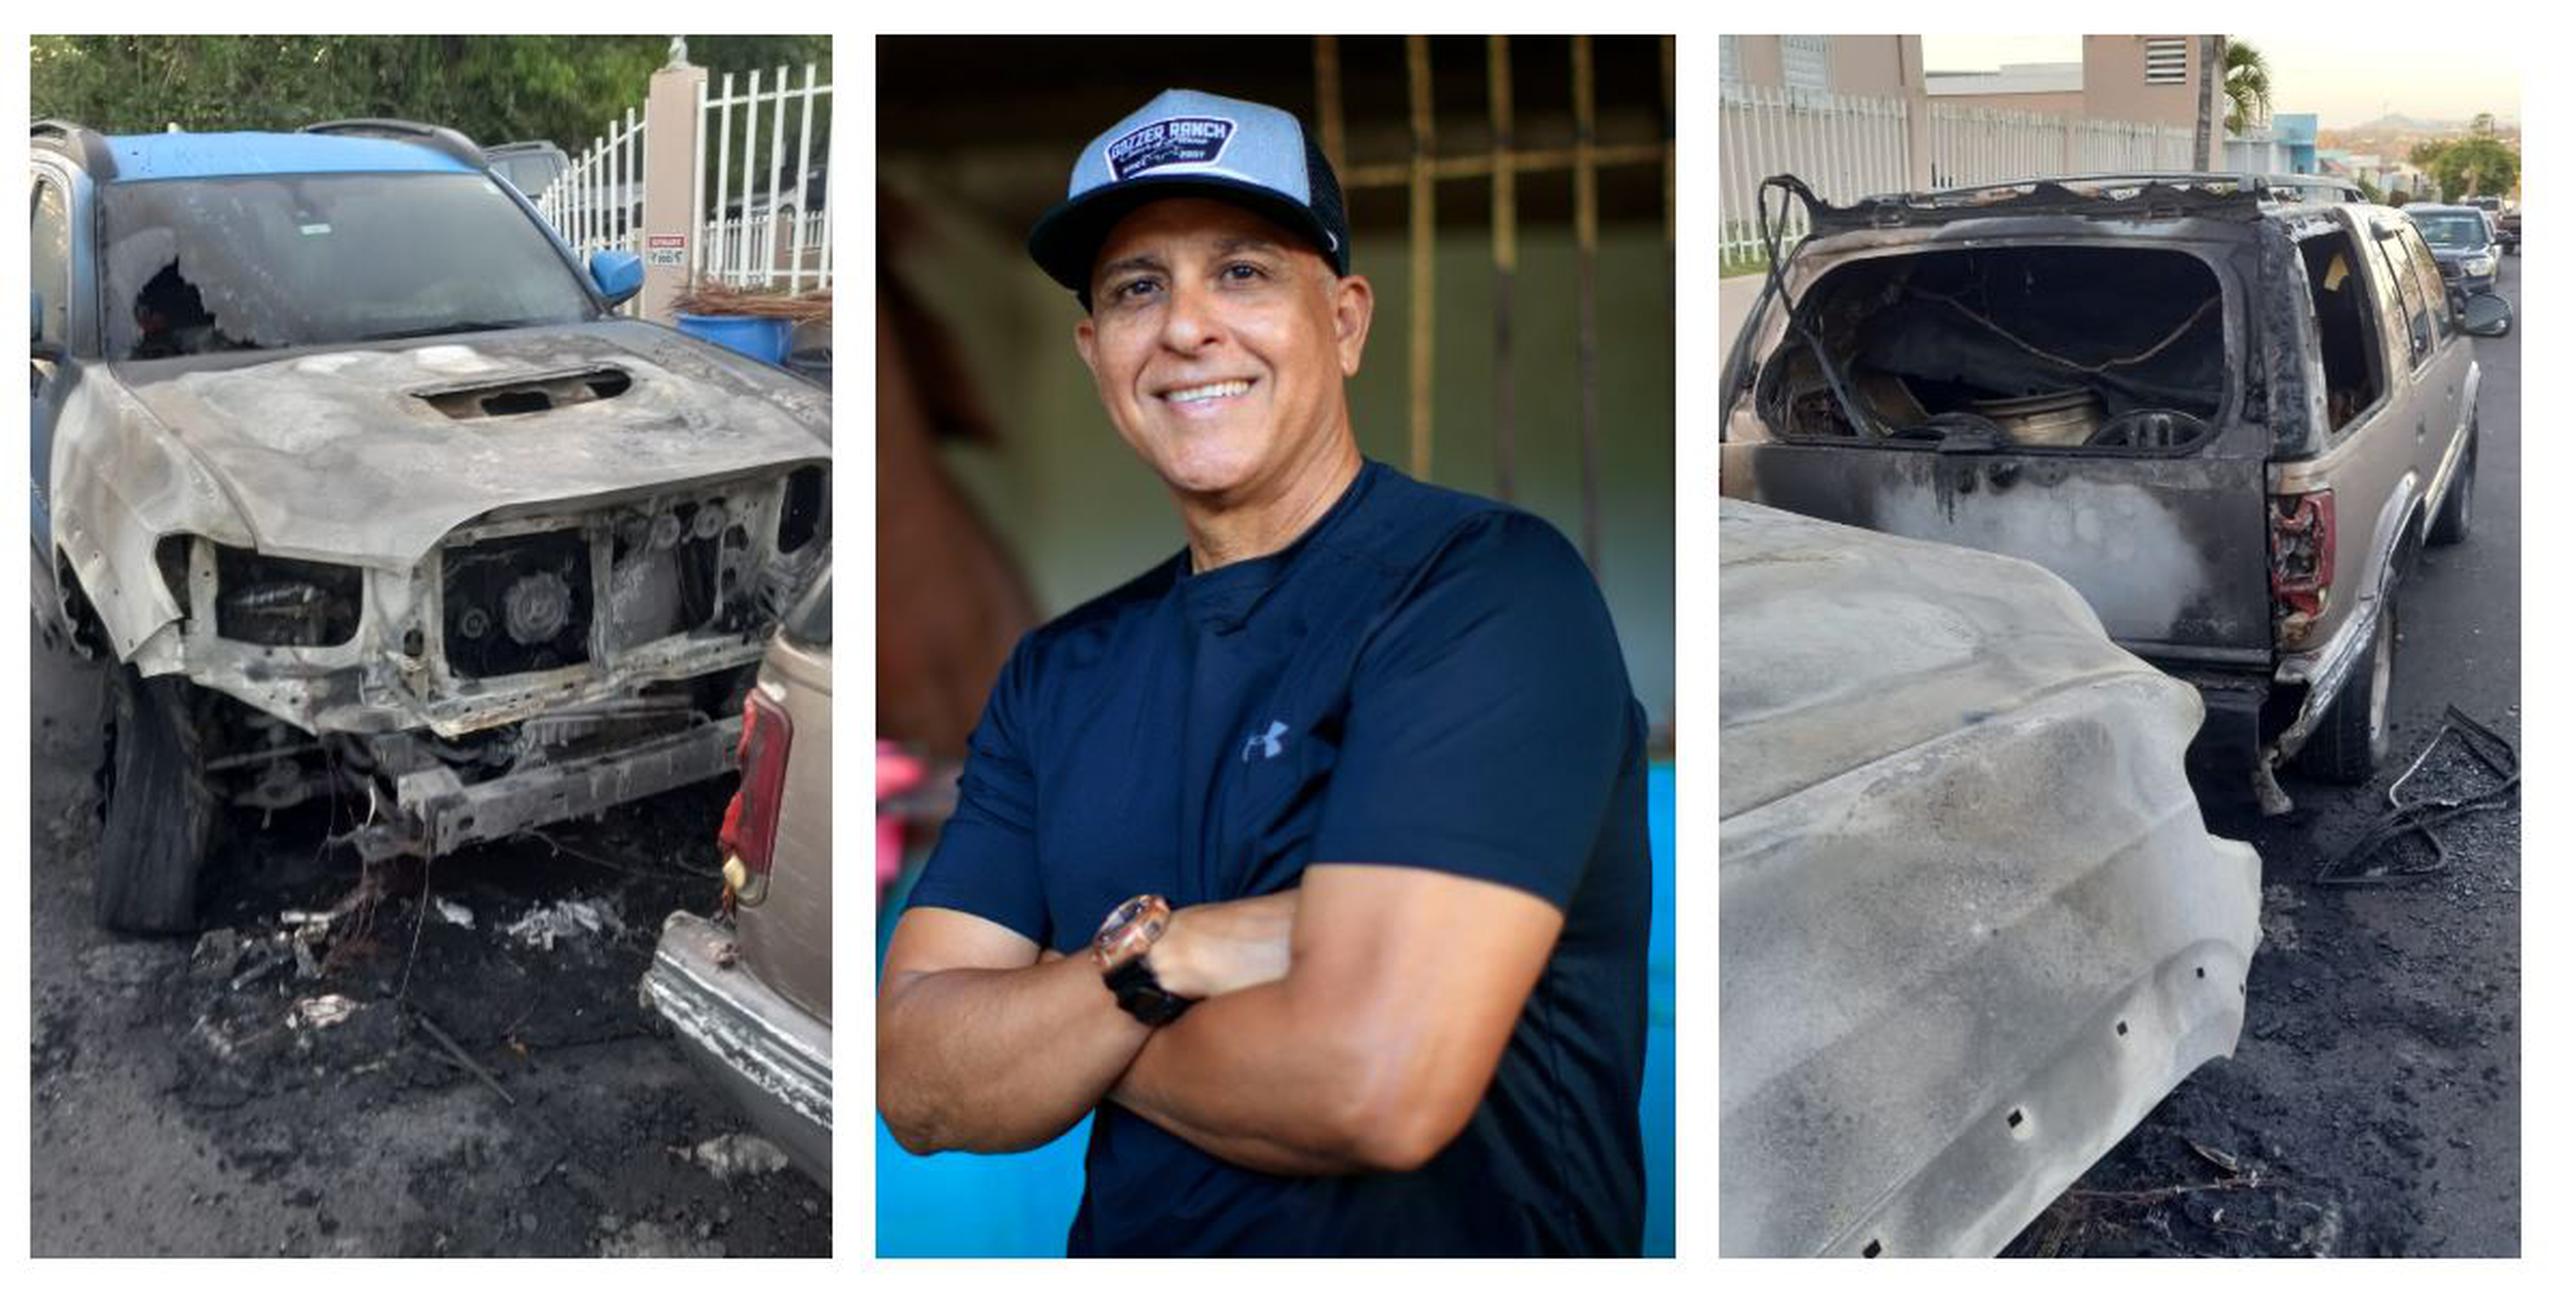 Lino Rivera fue víctima de un crimen el pasado viernes, 21 de abril, cuando su vehículo fue quemado frente a la casa de su madre en Venus Gardens. El fuego también quemó la guagua de su padrastro.